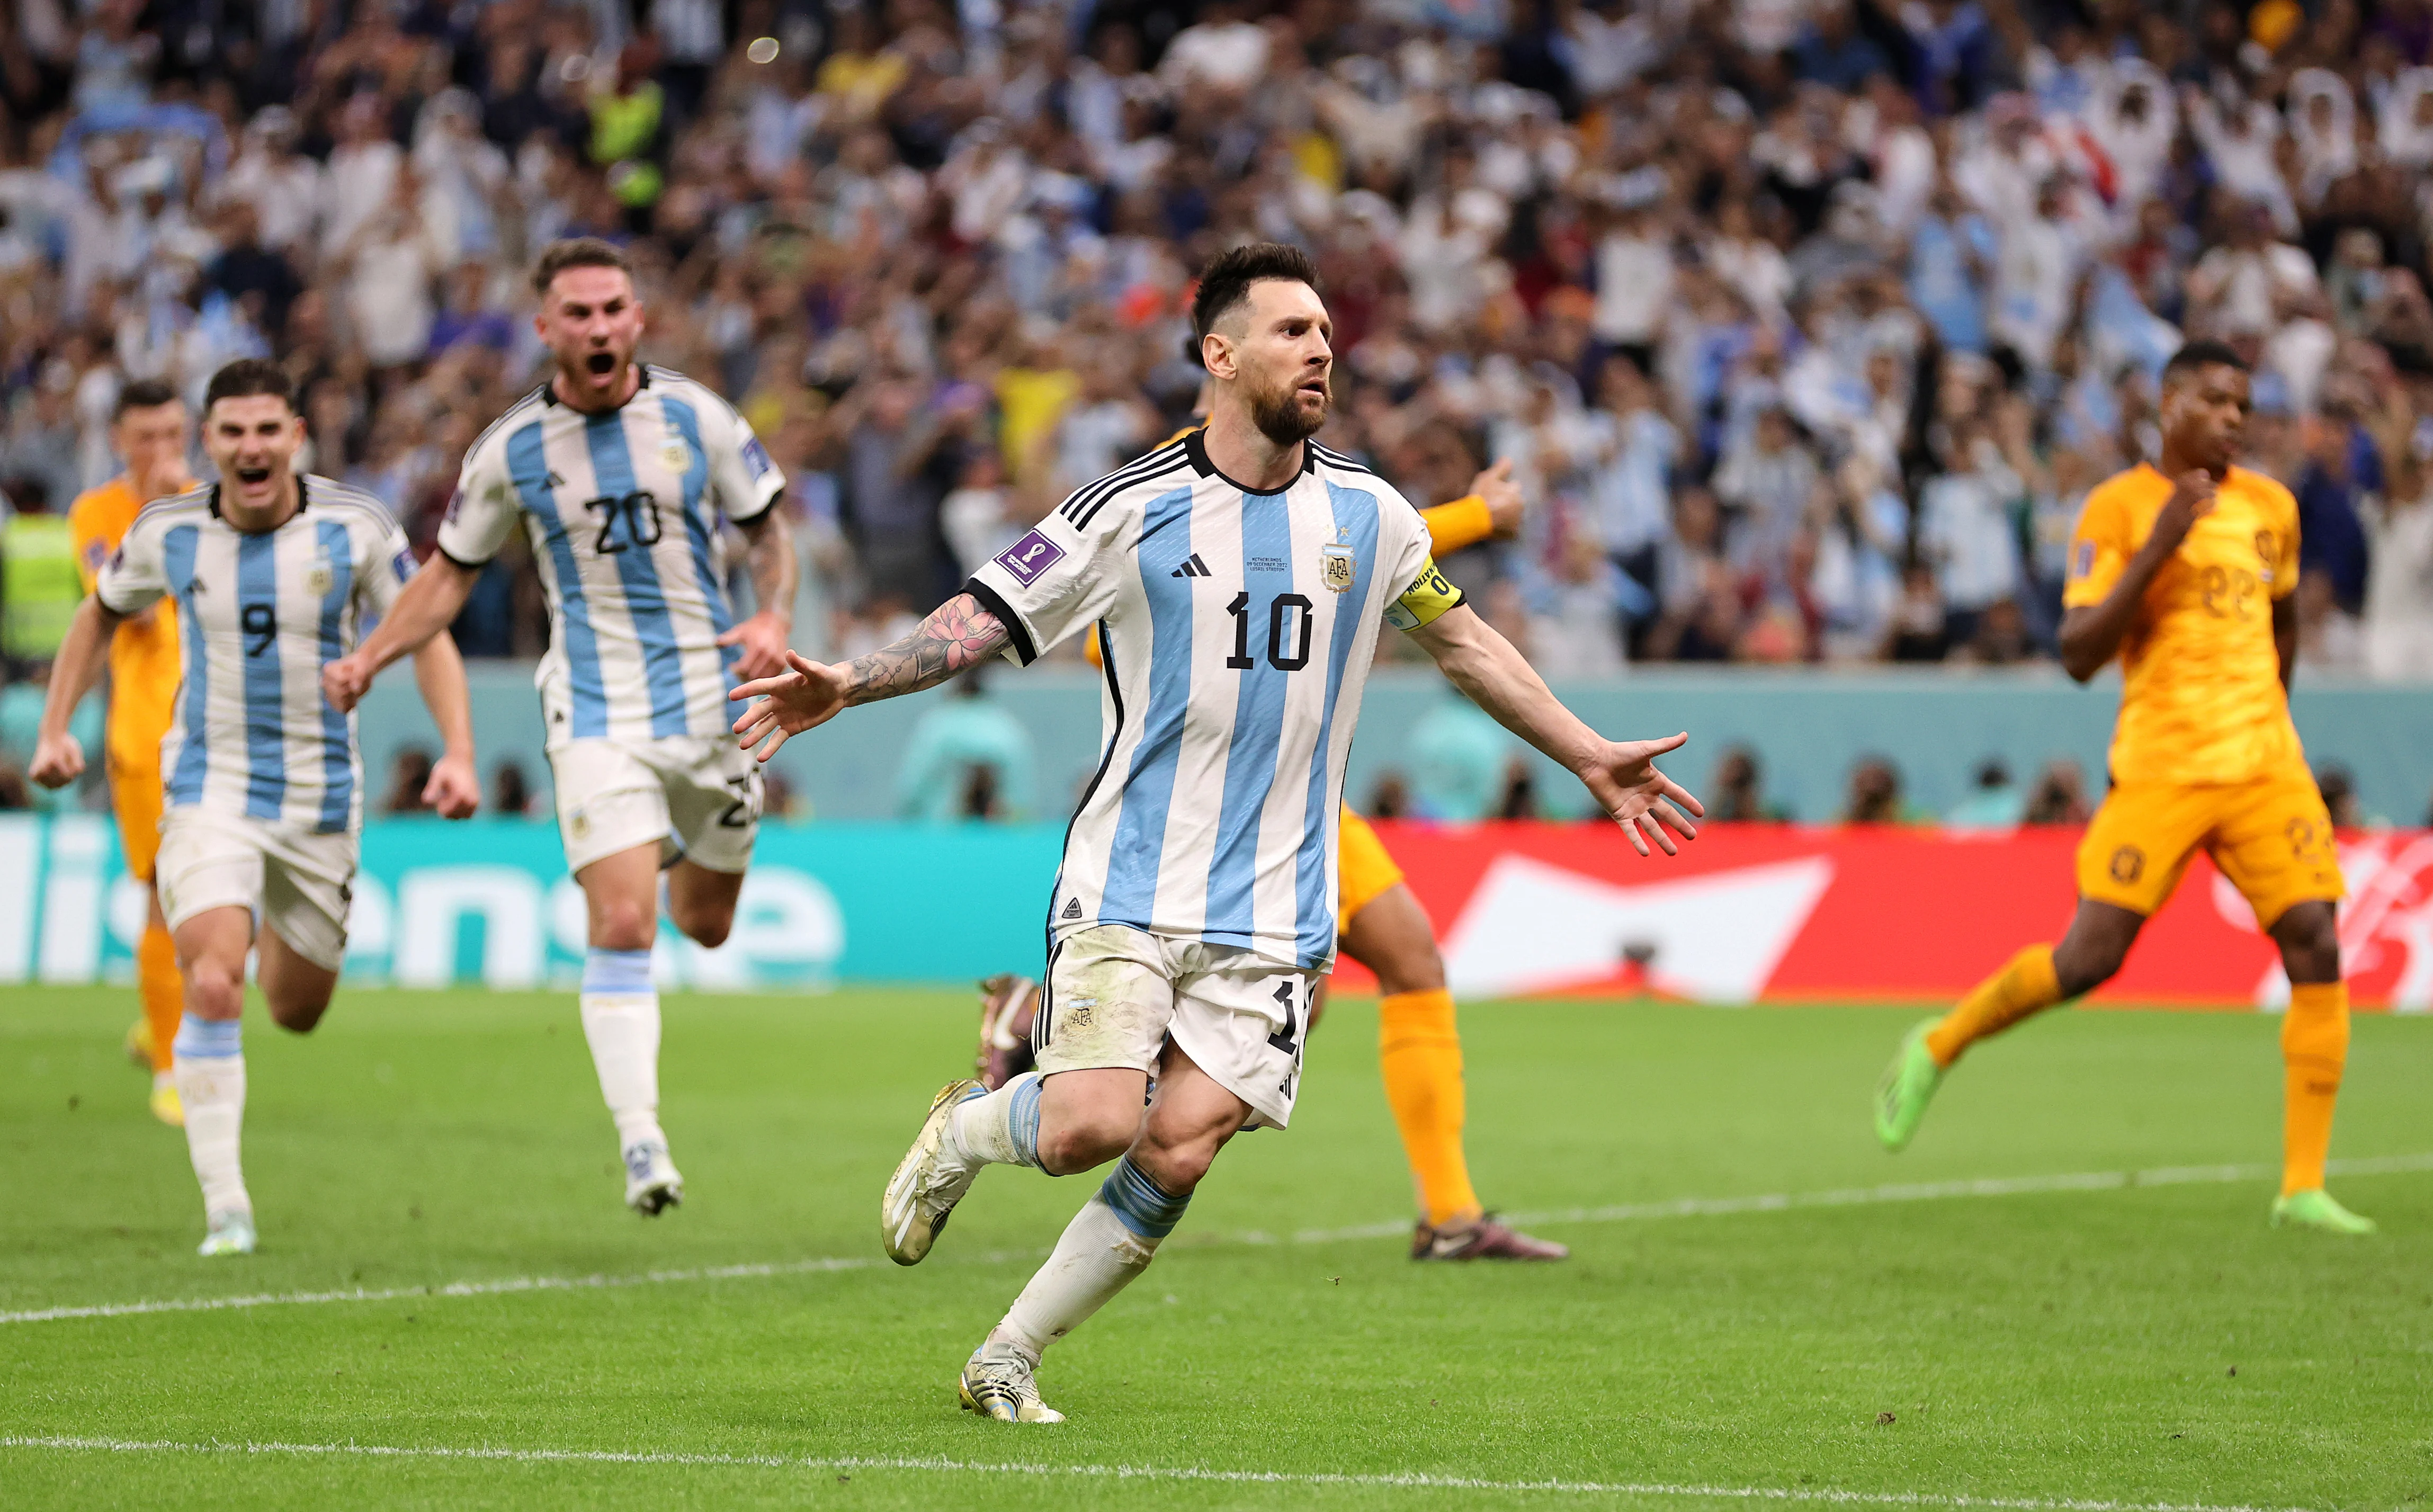 Nos pênaltis, Argentina bate a Holanda e fará semifinal dos últimos vice-campeões mundiais